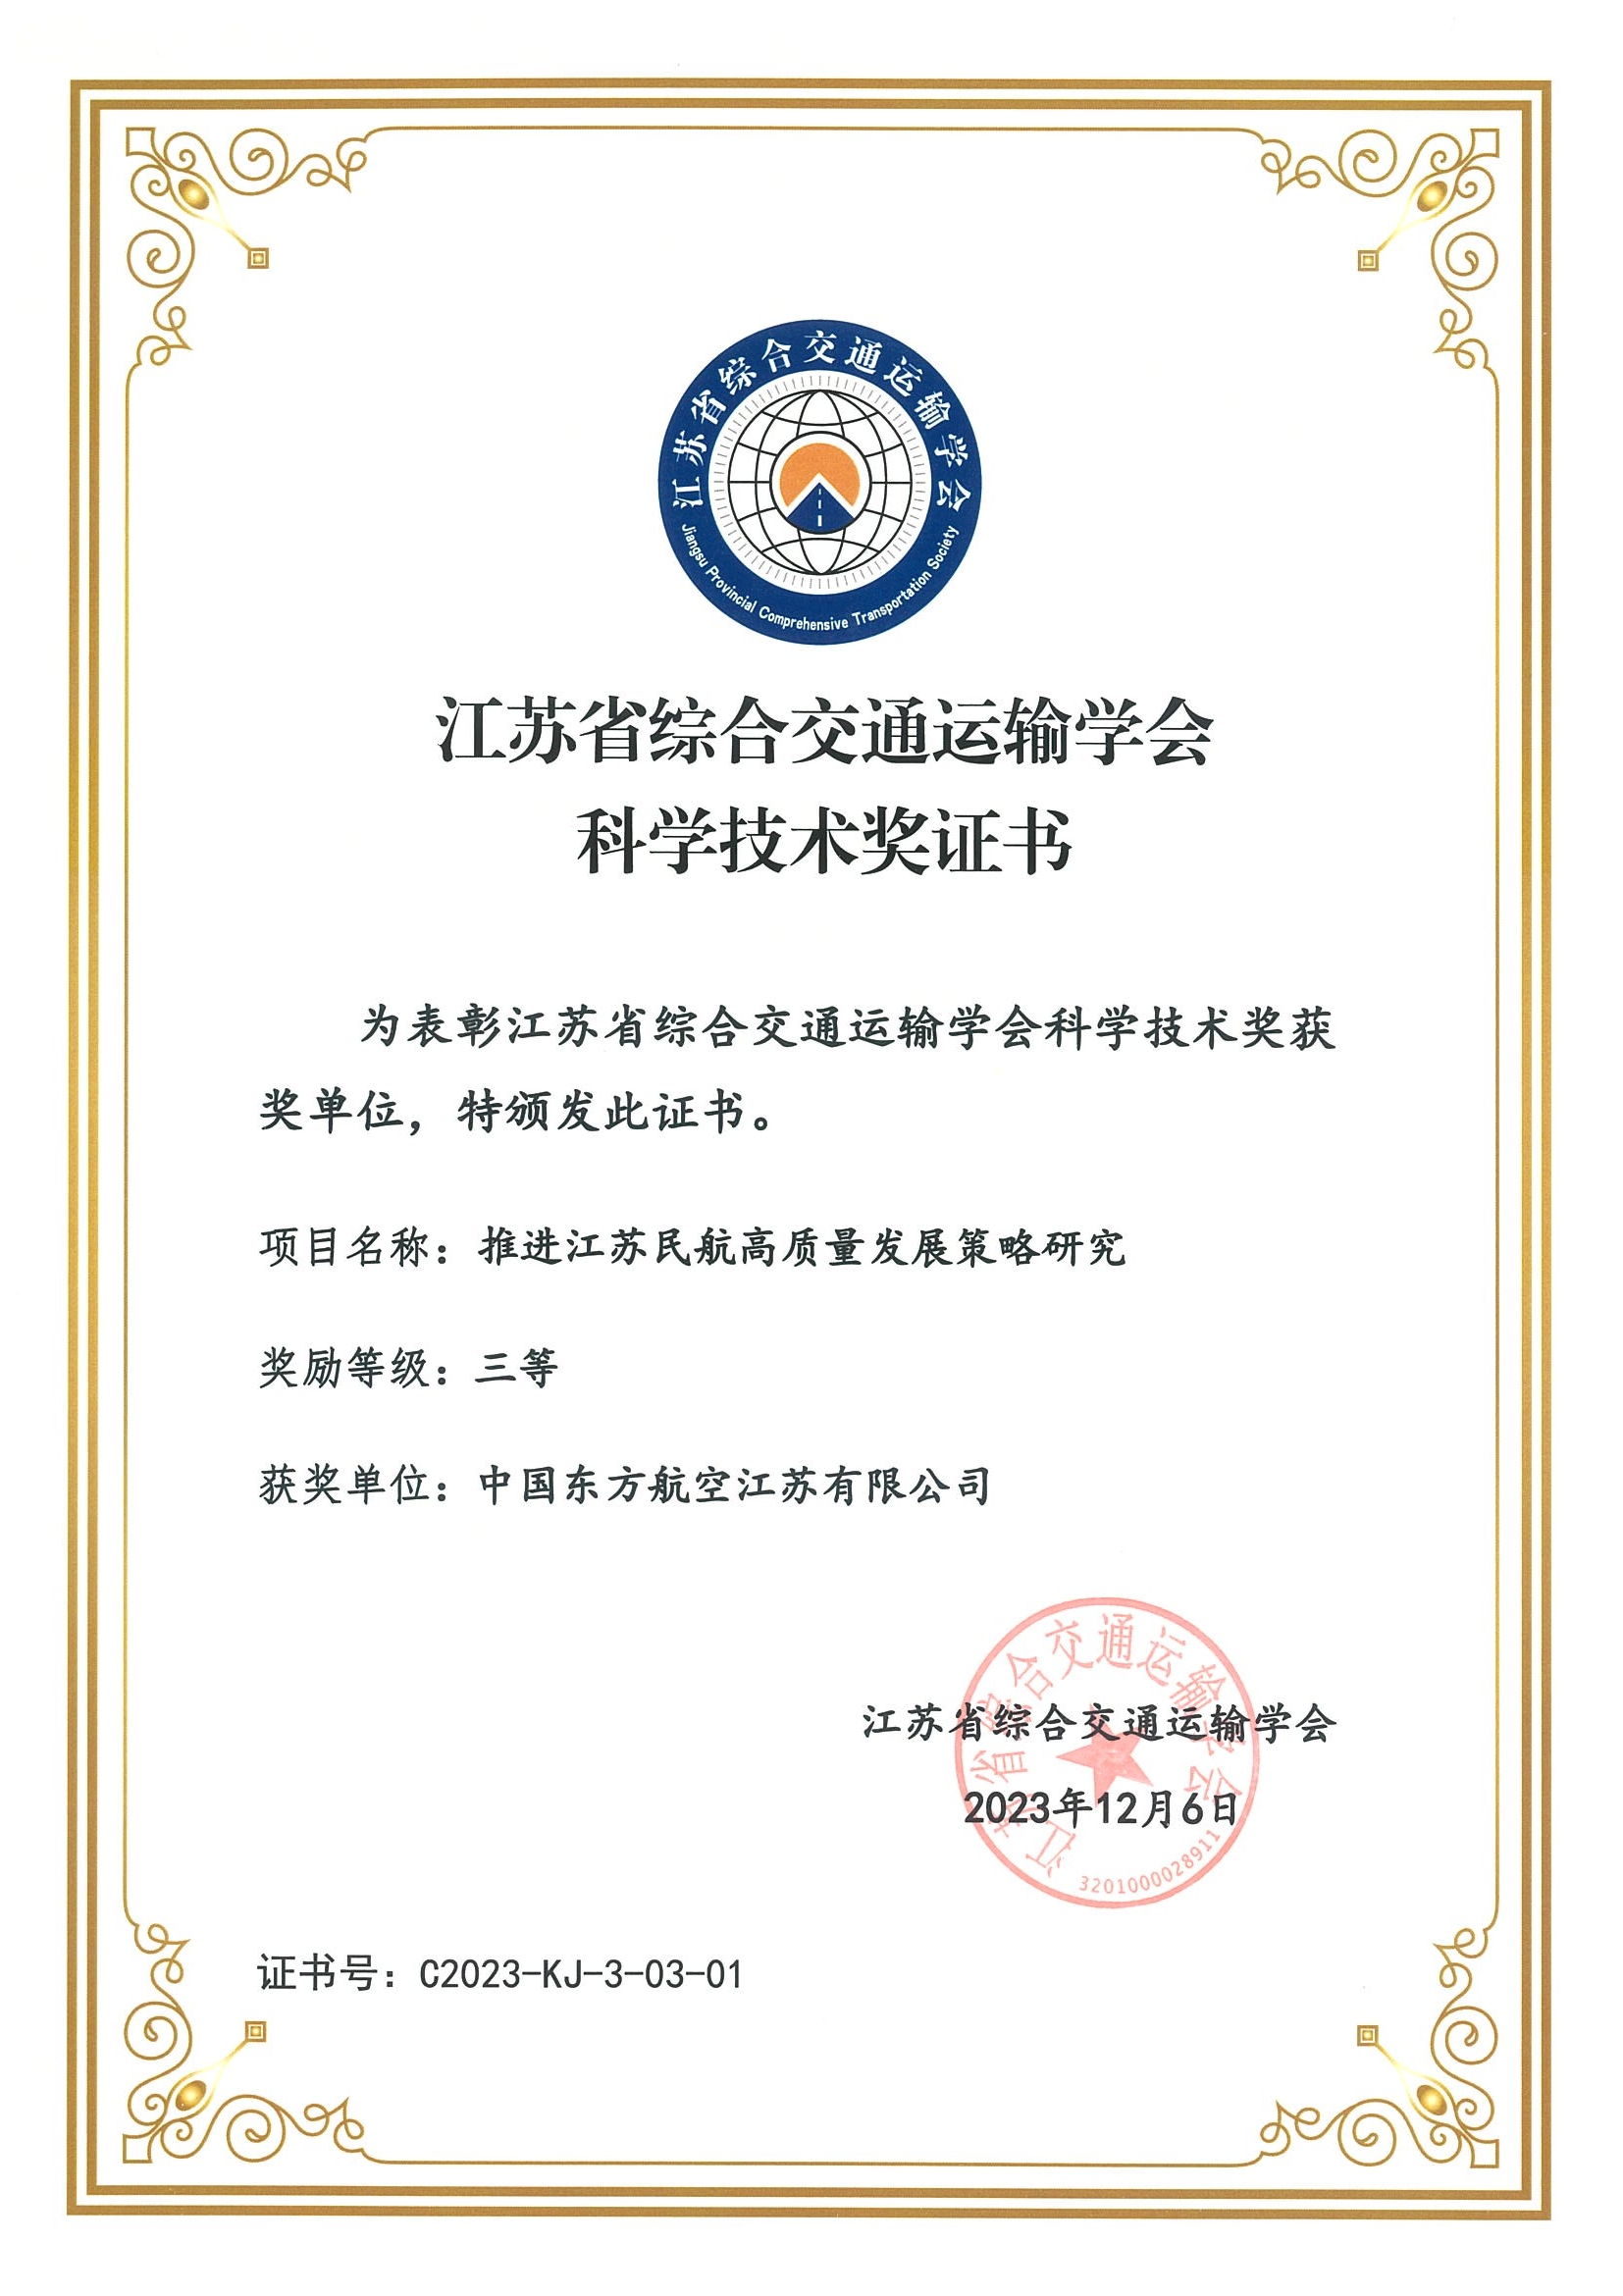 东航江苏公司研究项目荣获江苏省科学技术奖